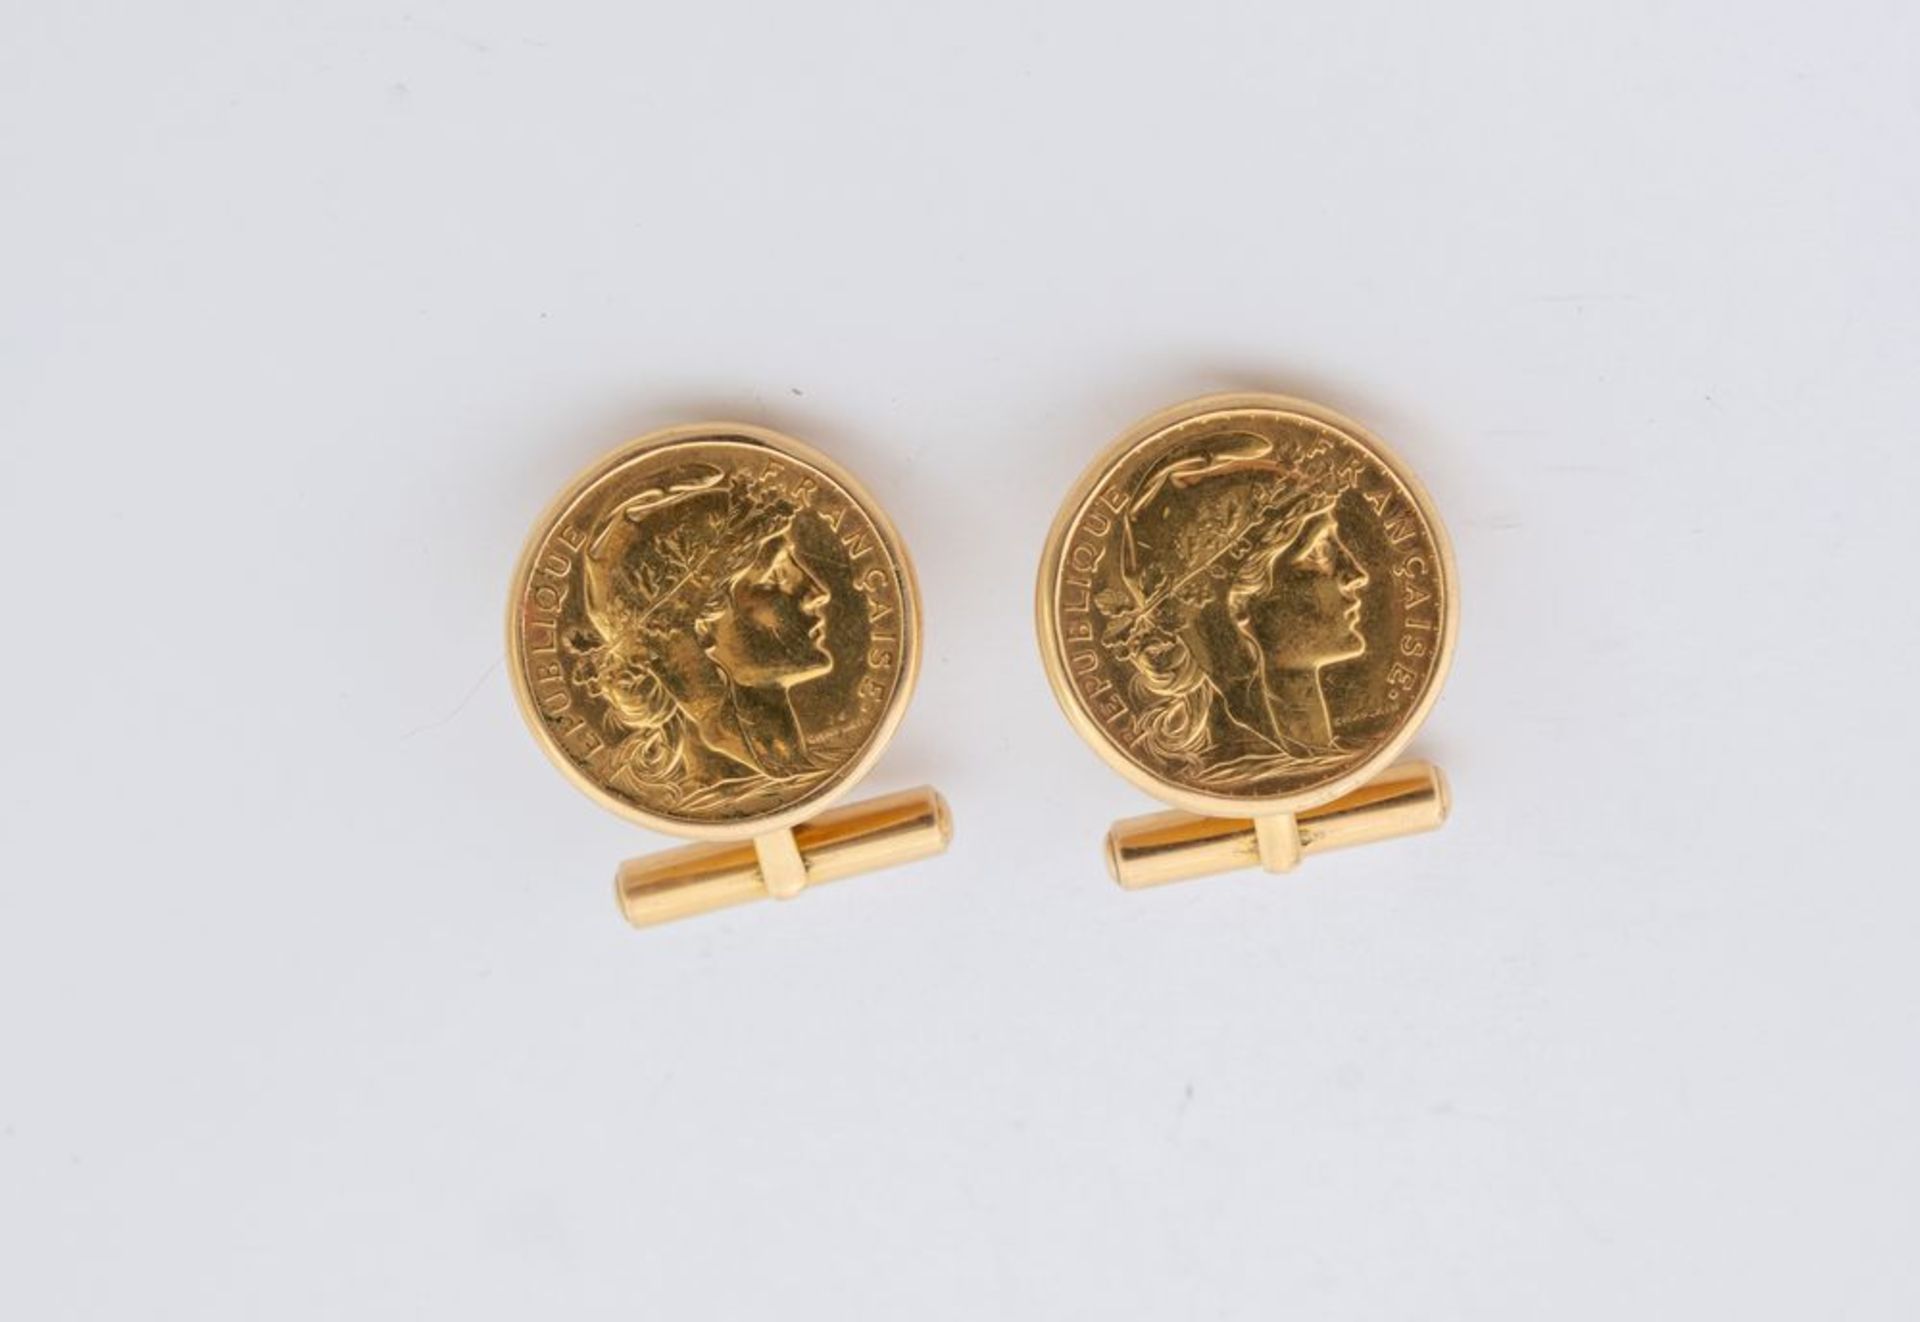 Paio di gemelli in oro giallo 18K, ciascuno centrato da Marengo Francese. Peso complessivo 27,0 gram